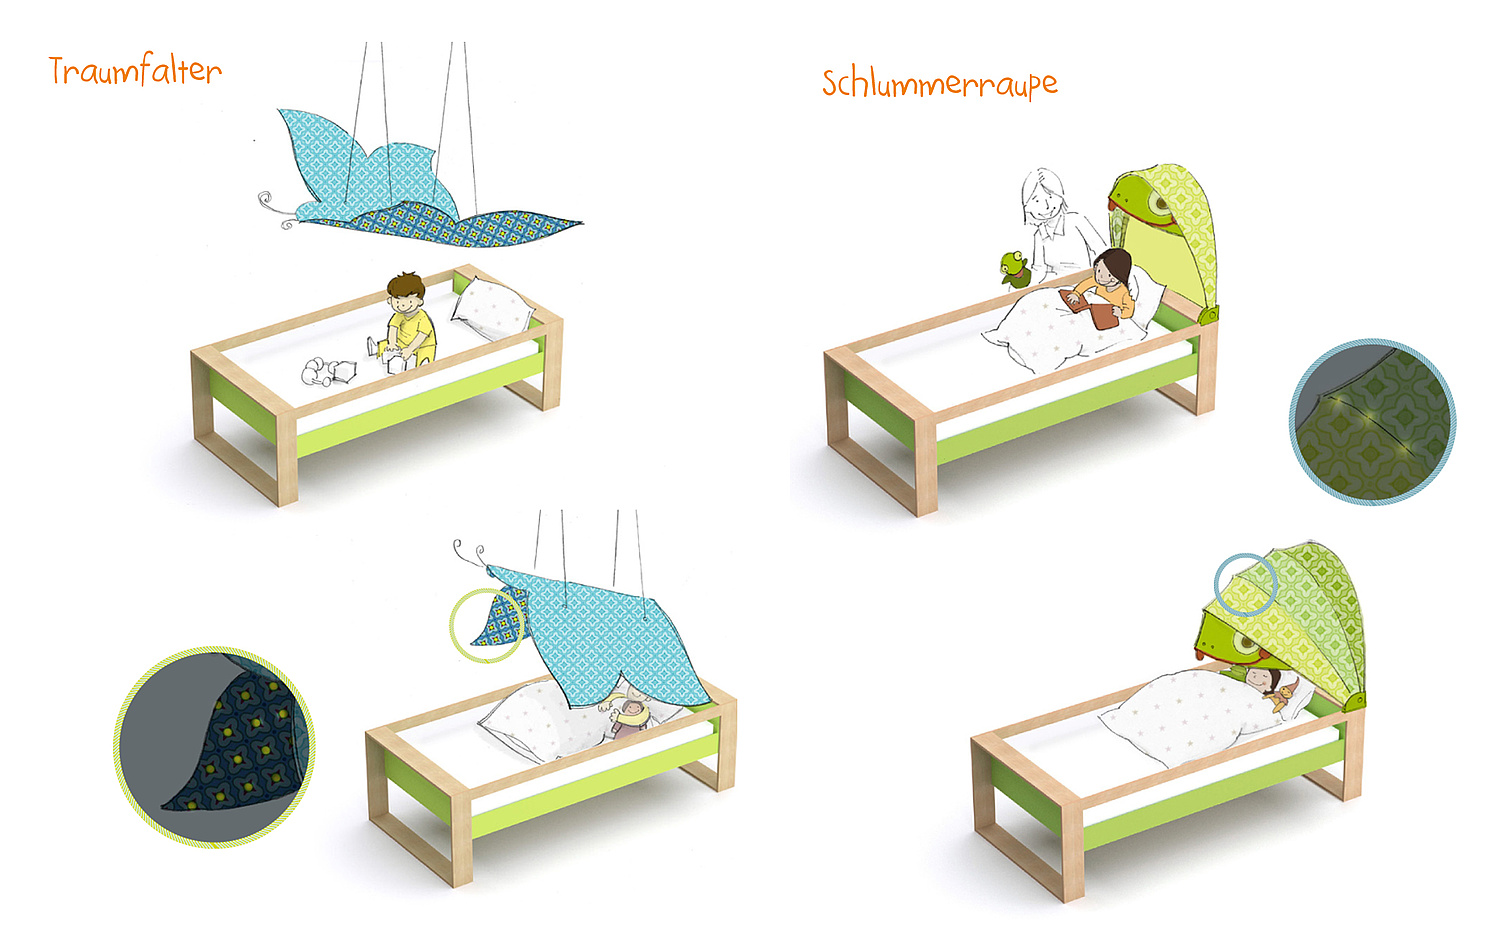 Das Bild zeigt verschiedene Zusatzelemente für Kinderbetten. Jako-o, 2011 (© Papenfuss | Atelier)